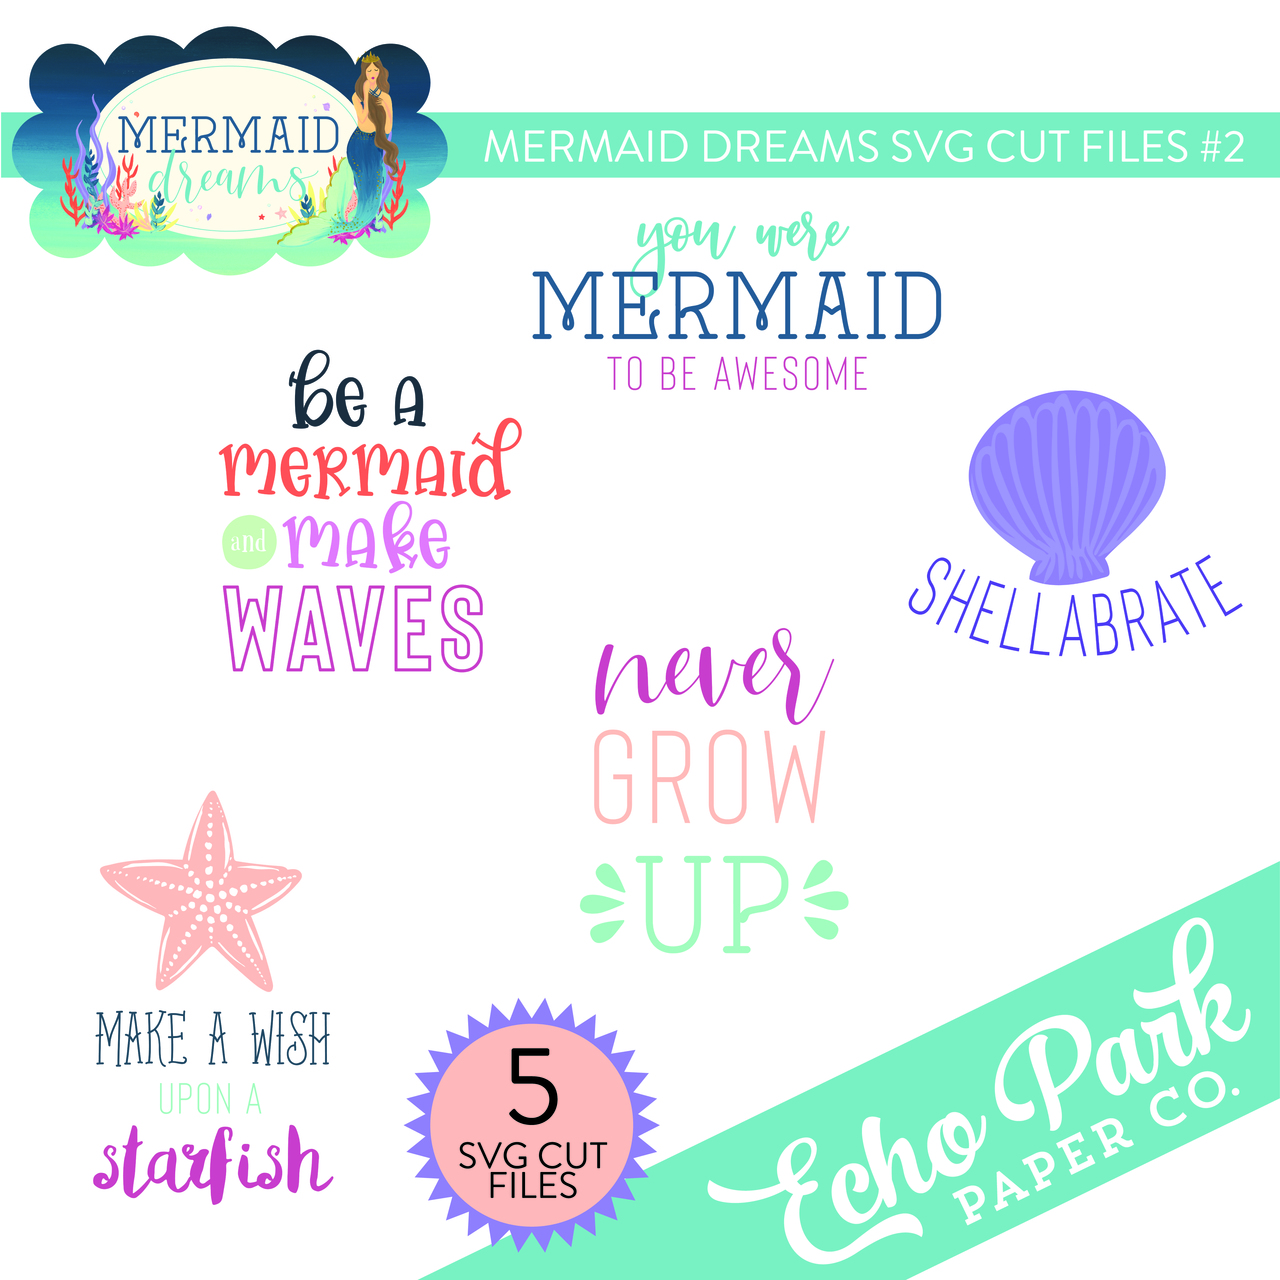 Mermaid Dreams SVG Cut Files #2